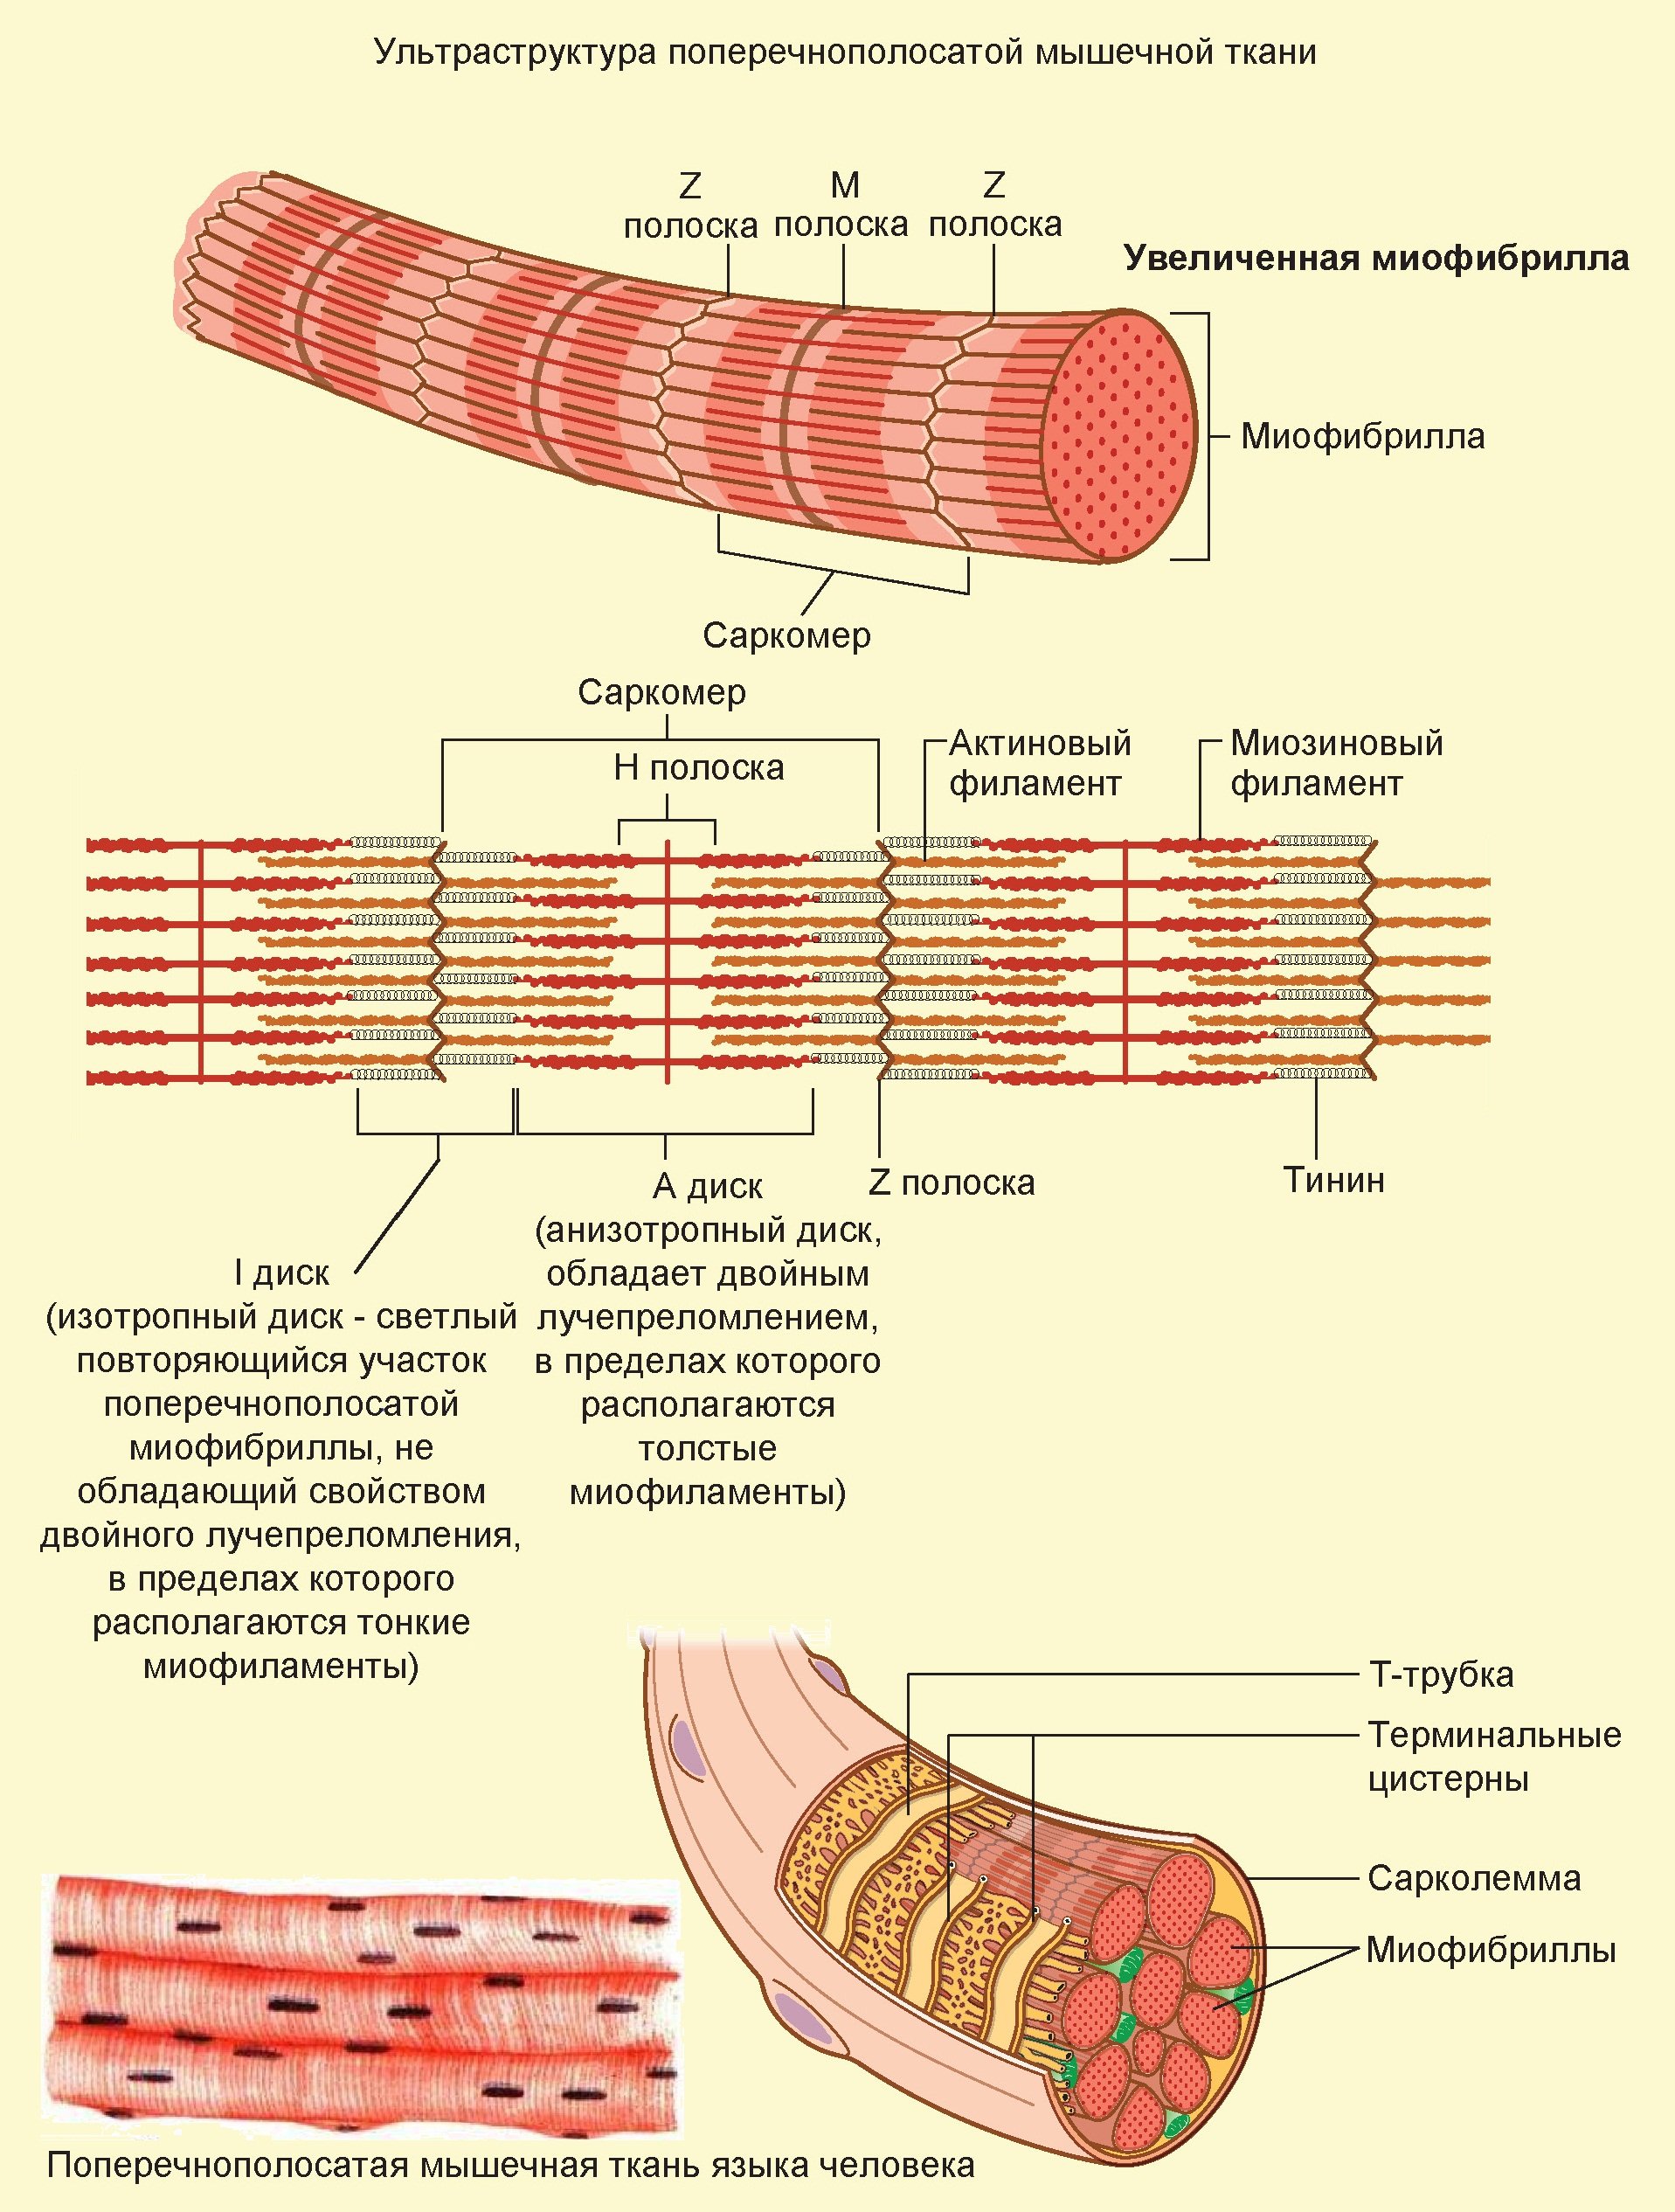 Строение скелетного мышечного волокна. Скелетная мышечная ткань саркомер. Структура поперечно полосатого мышечного волокна. Ультраструктура скелетного мышечного волокна. Схема поперечно полосатого мышечного волокна.